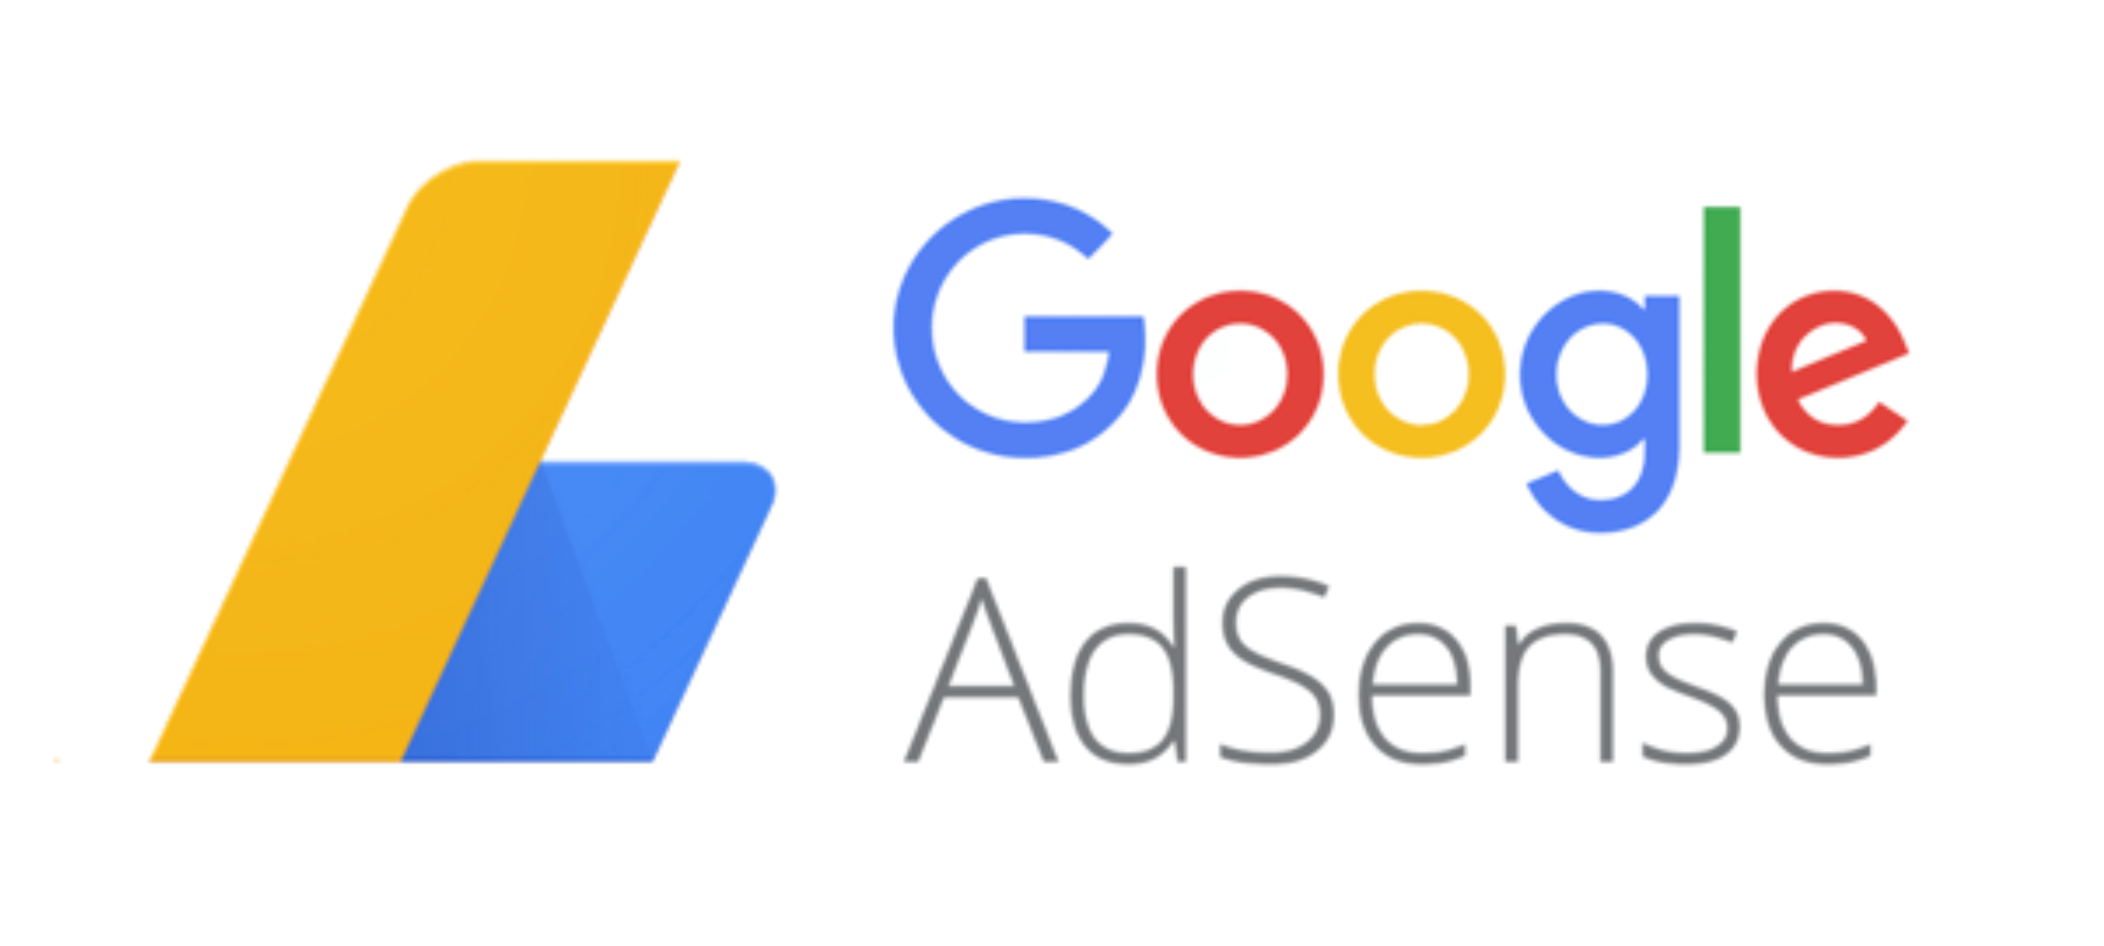 ما هو جوجل أدسنس؟